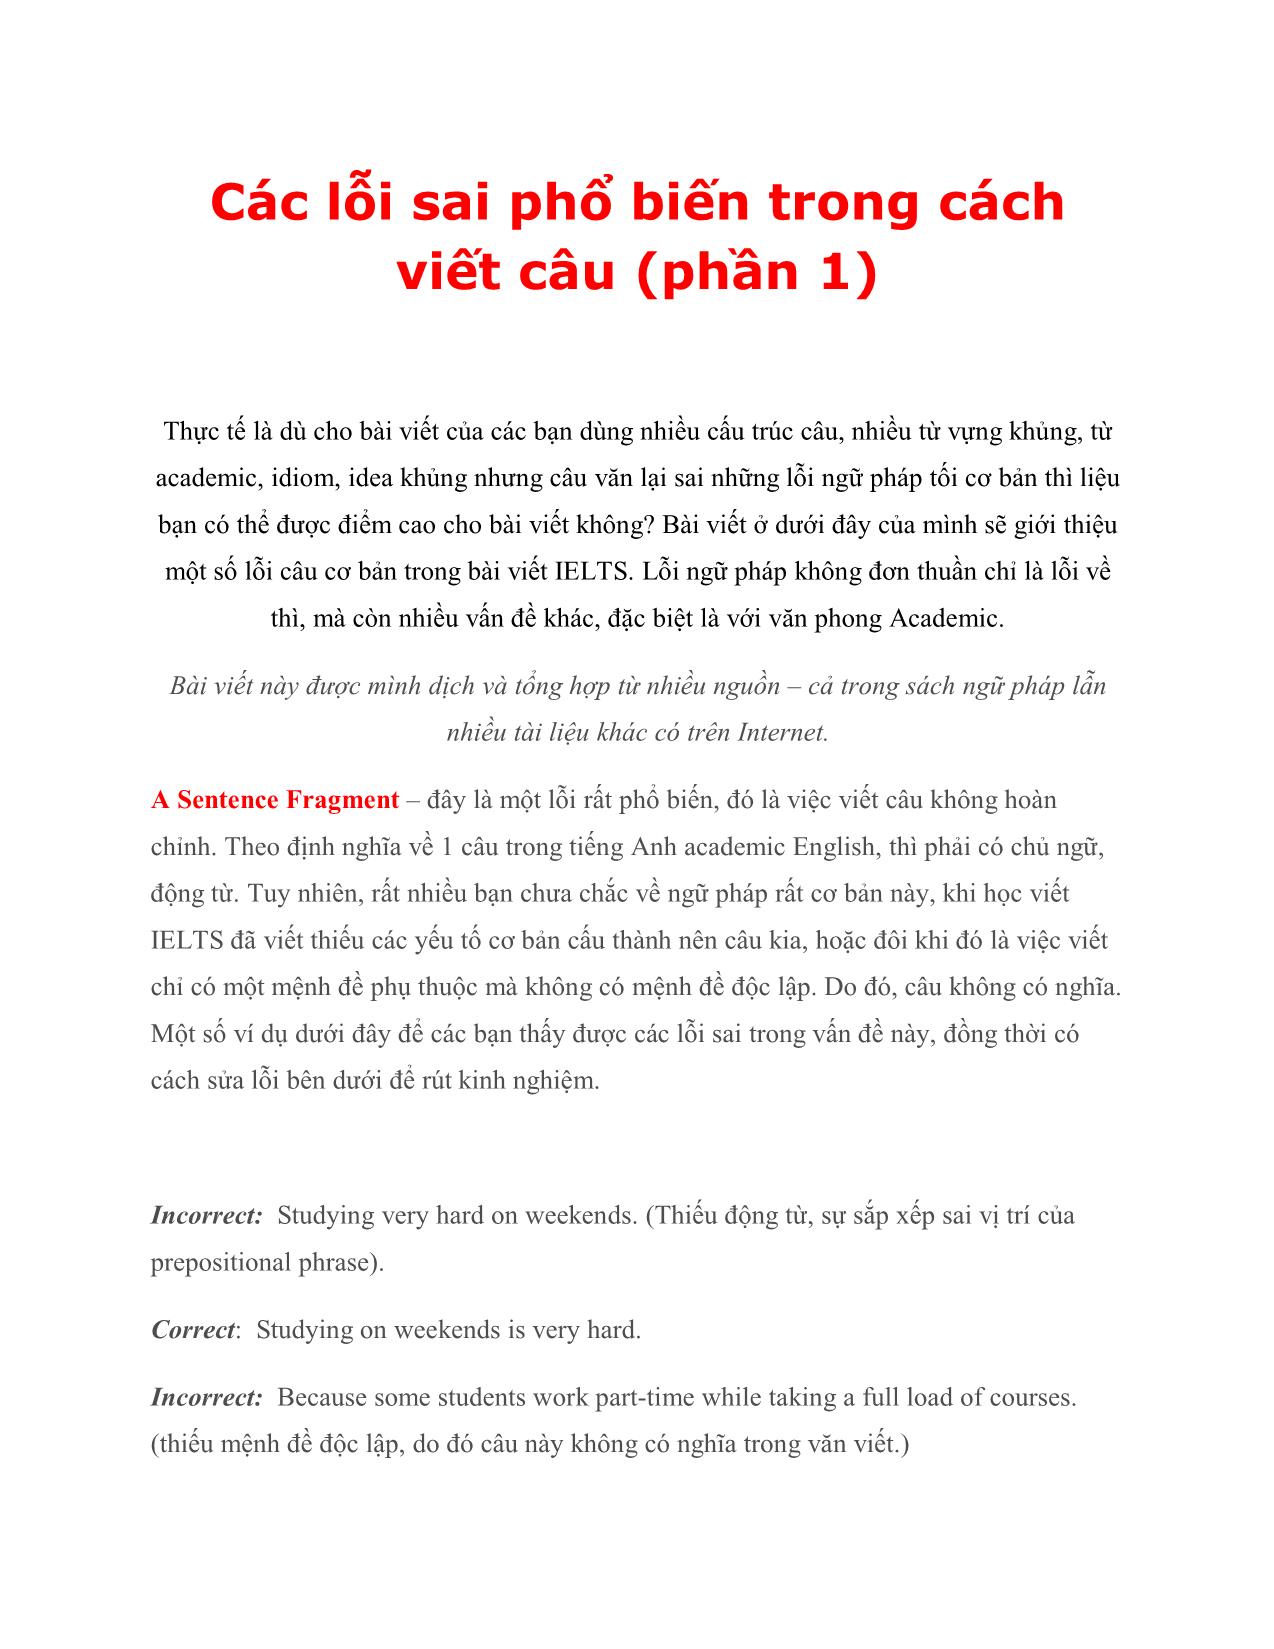 Các lỗi sai phổ biến trong cách viết câu (phần 1) trang 1